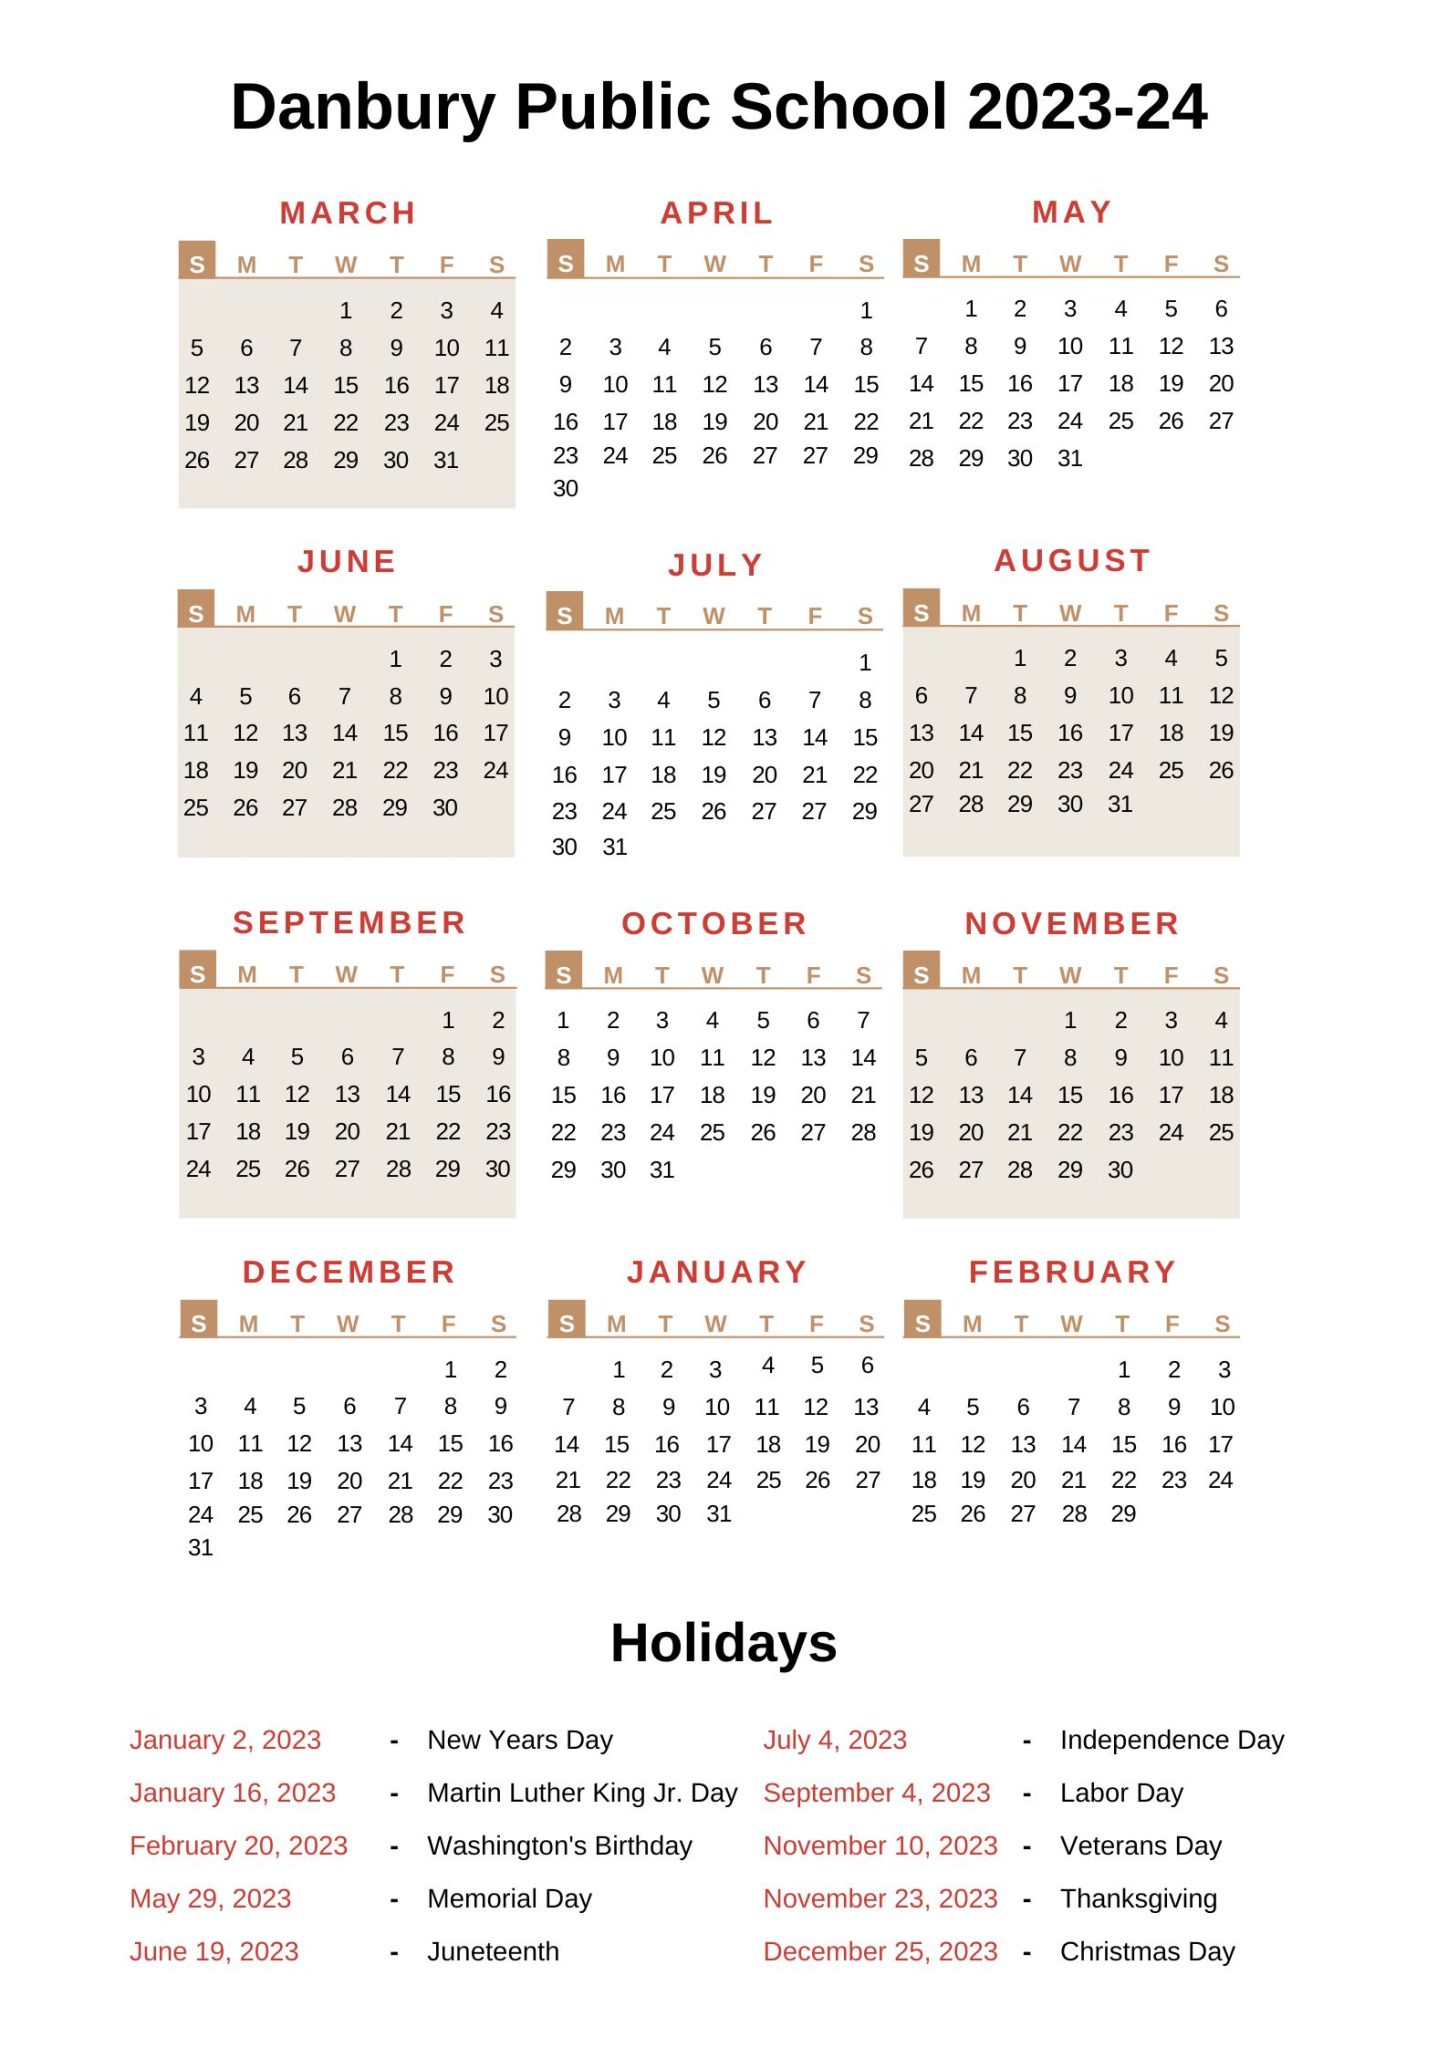 Danbury Public Schools Calendar DPS 2023 24 With Holidays